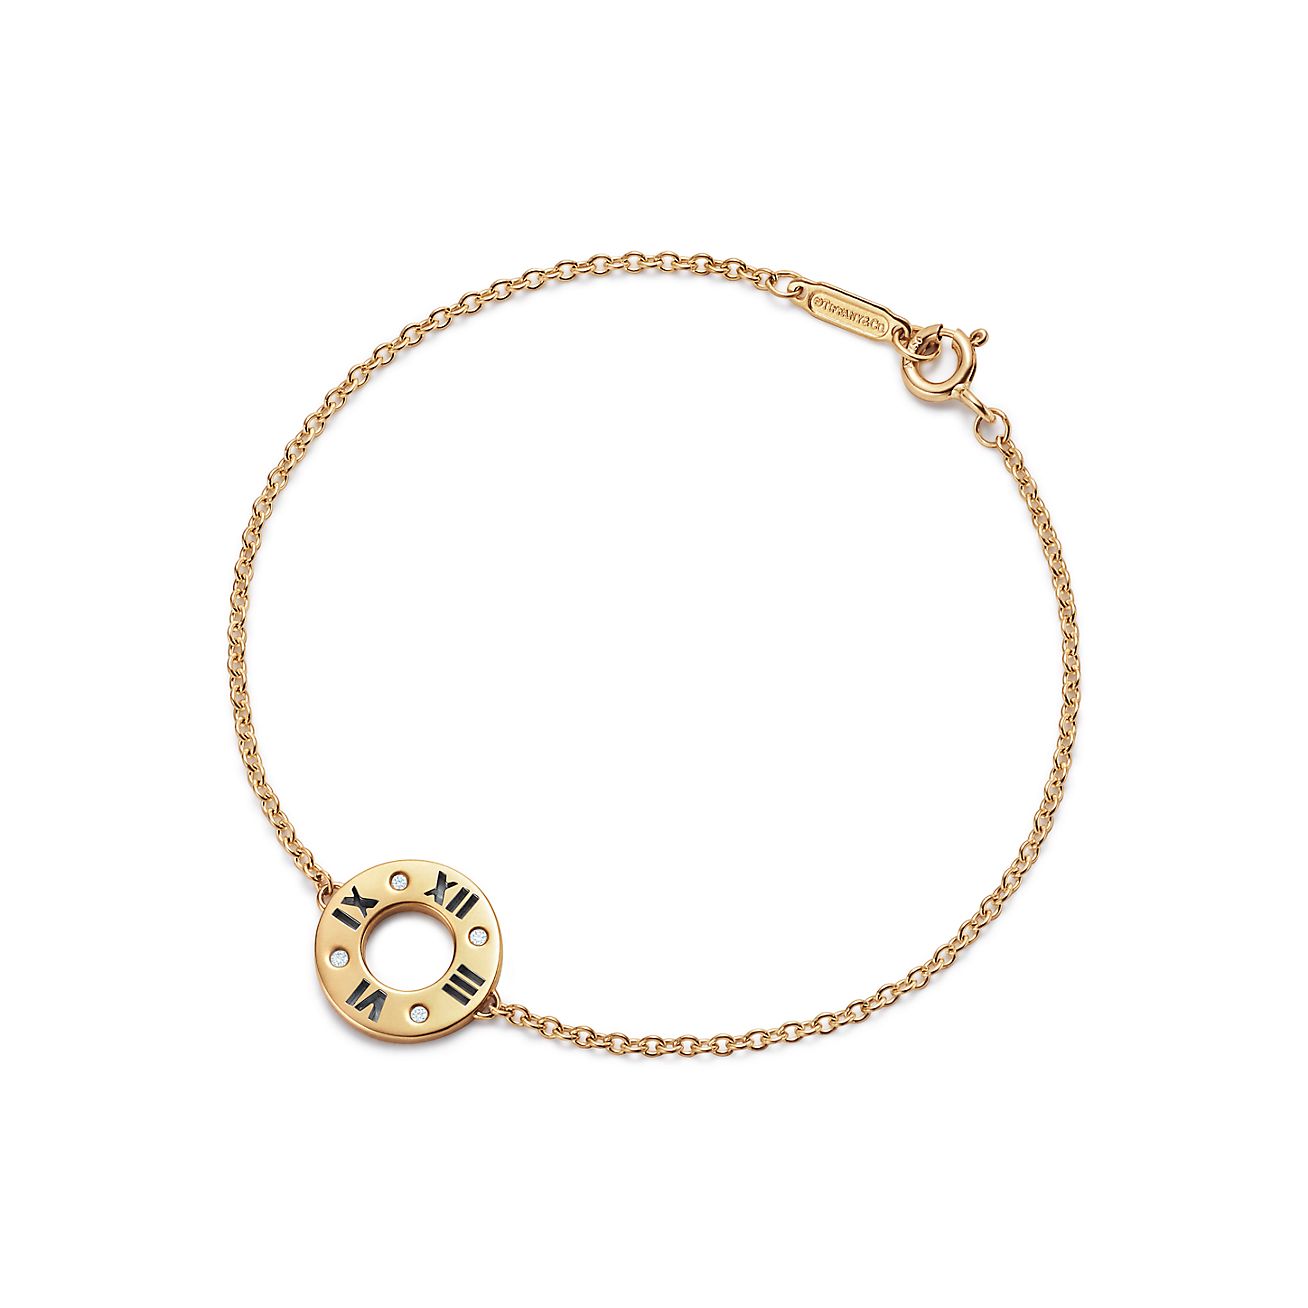 Atlas® pierced bar bracelet in 18k gold 